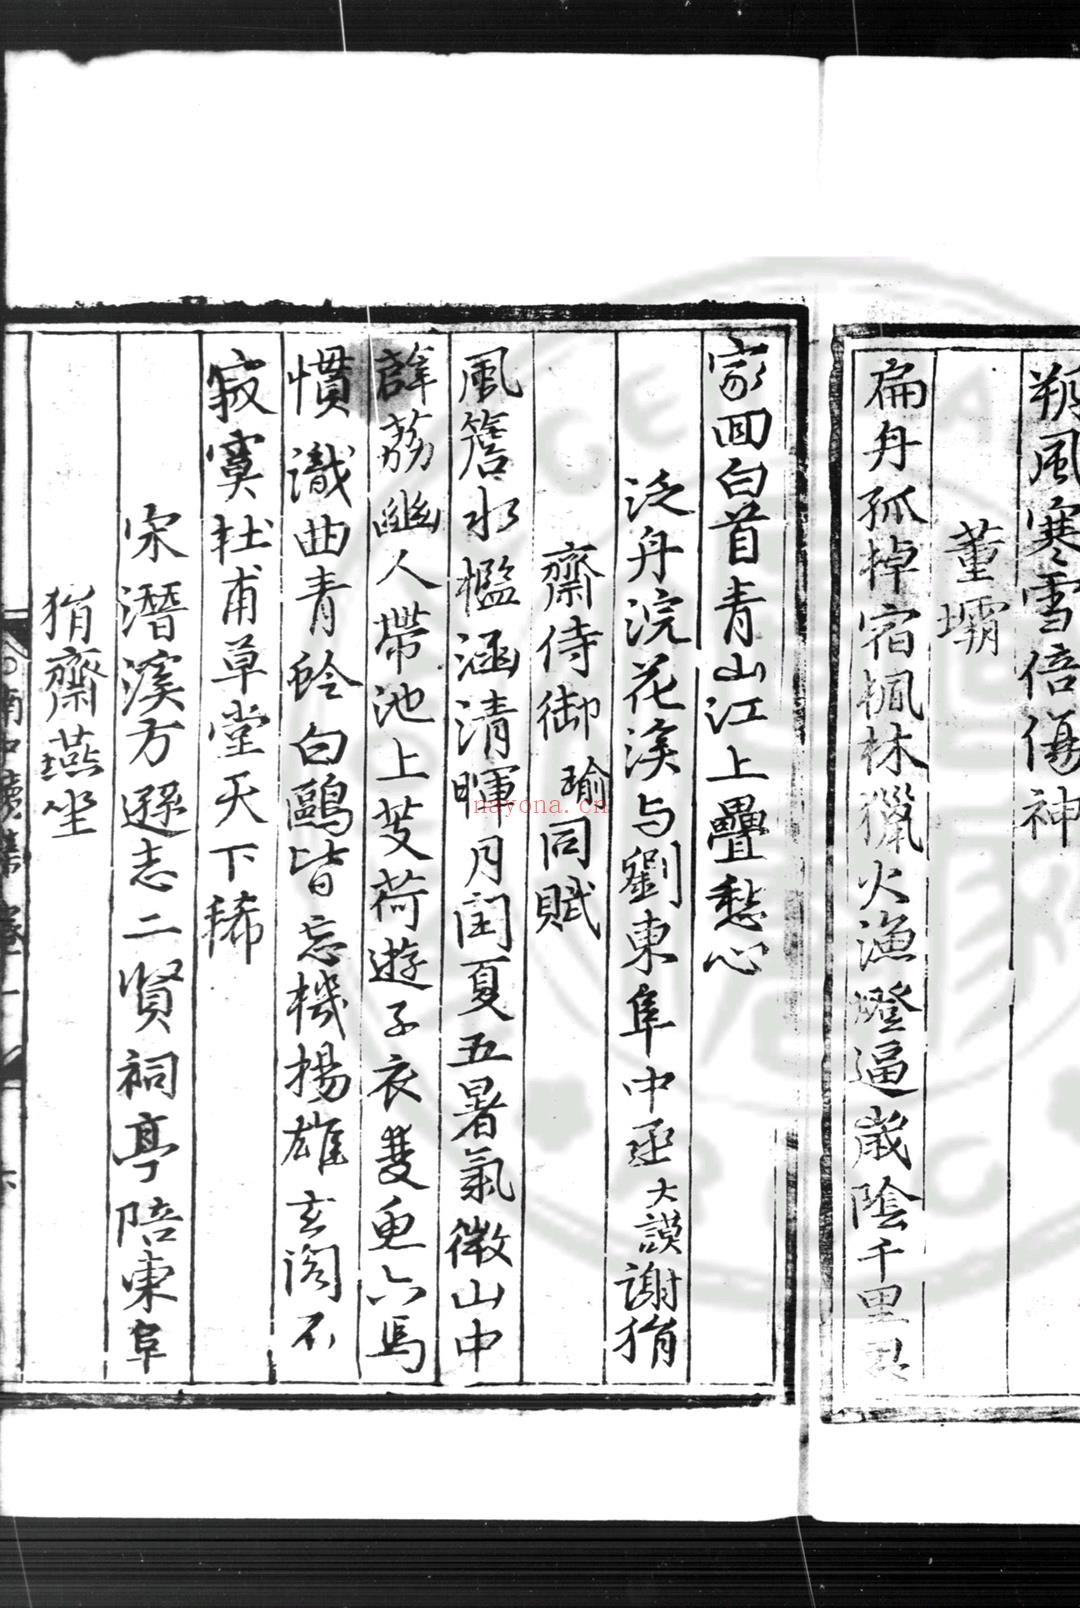 南中续集 (明)杨慎撰 明嘉靖间(1522-1566)影刊手稿本